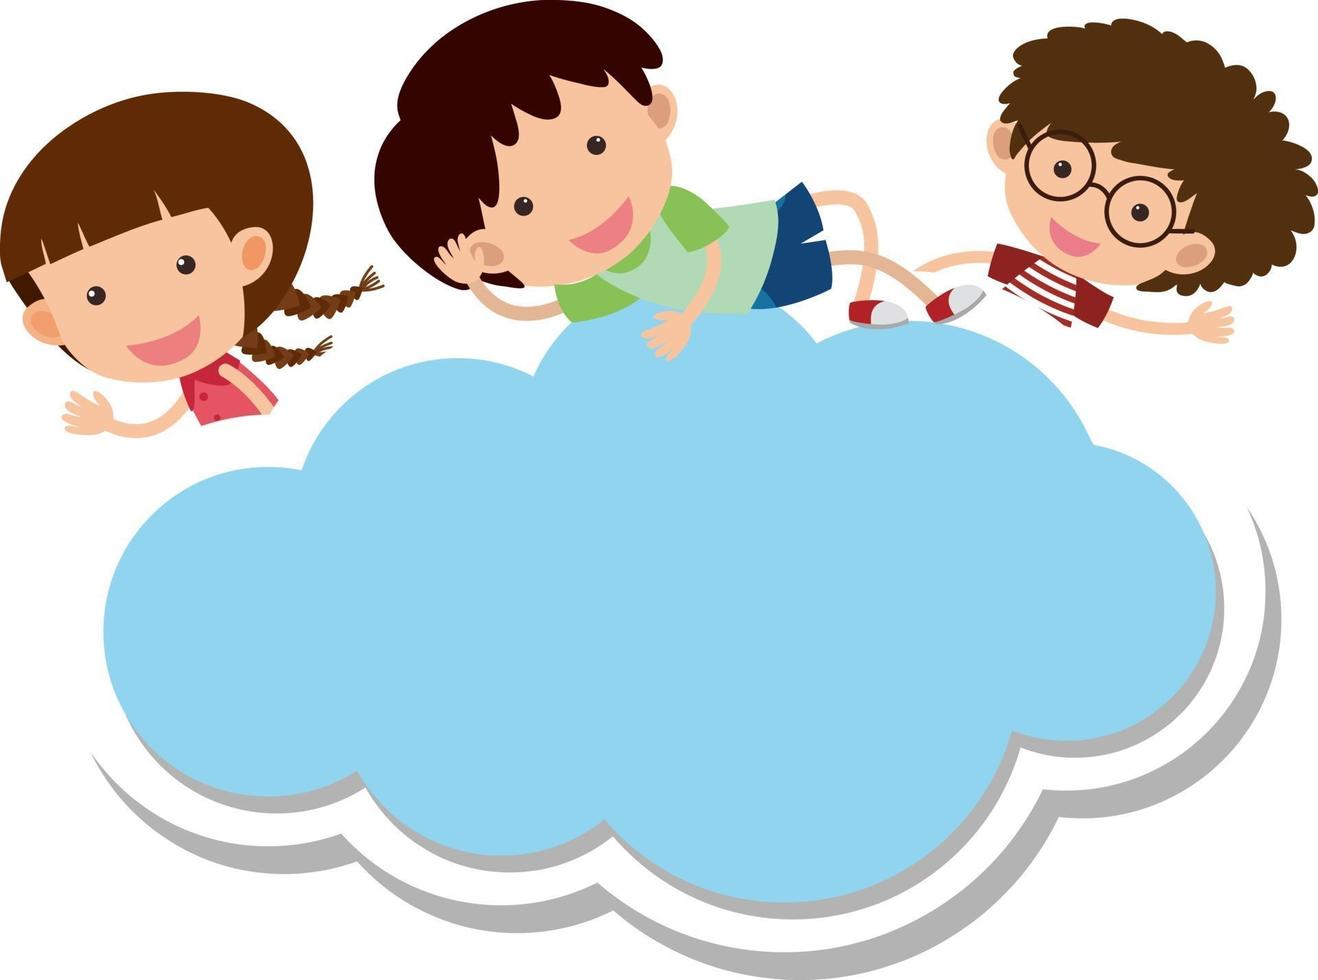 lege banner in de vorm van een wolk met veel stripfiguren voor kinderen vector